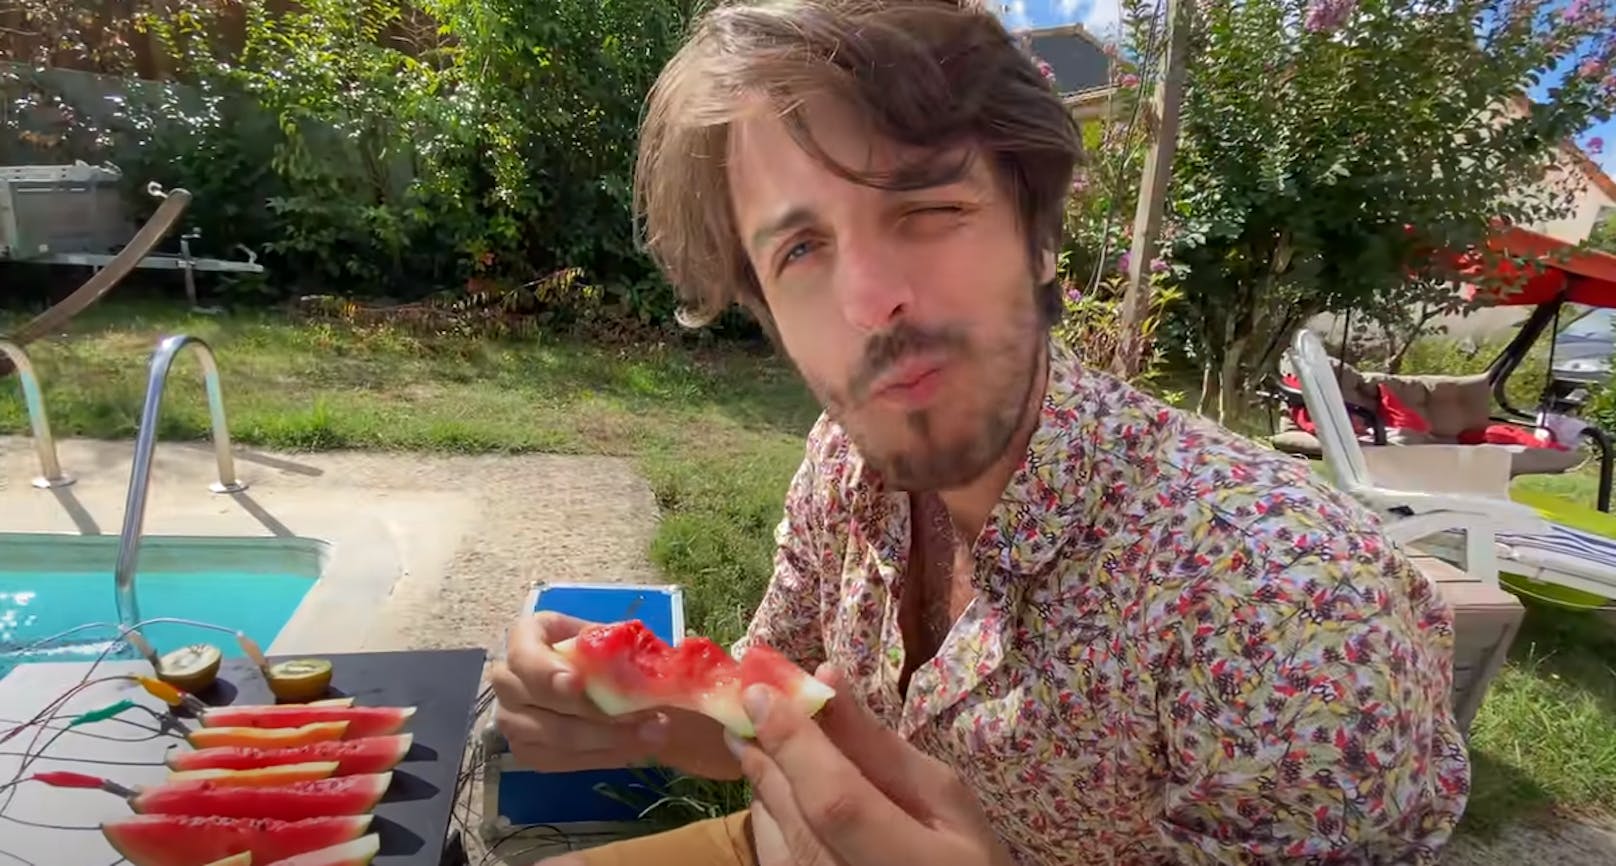 Nebst dem Musizieren verzehrt der YouTuber die Melone auch gern.